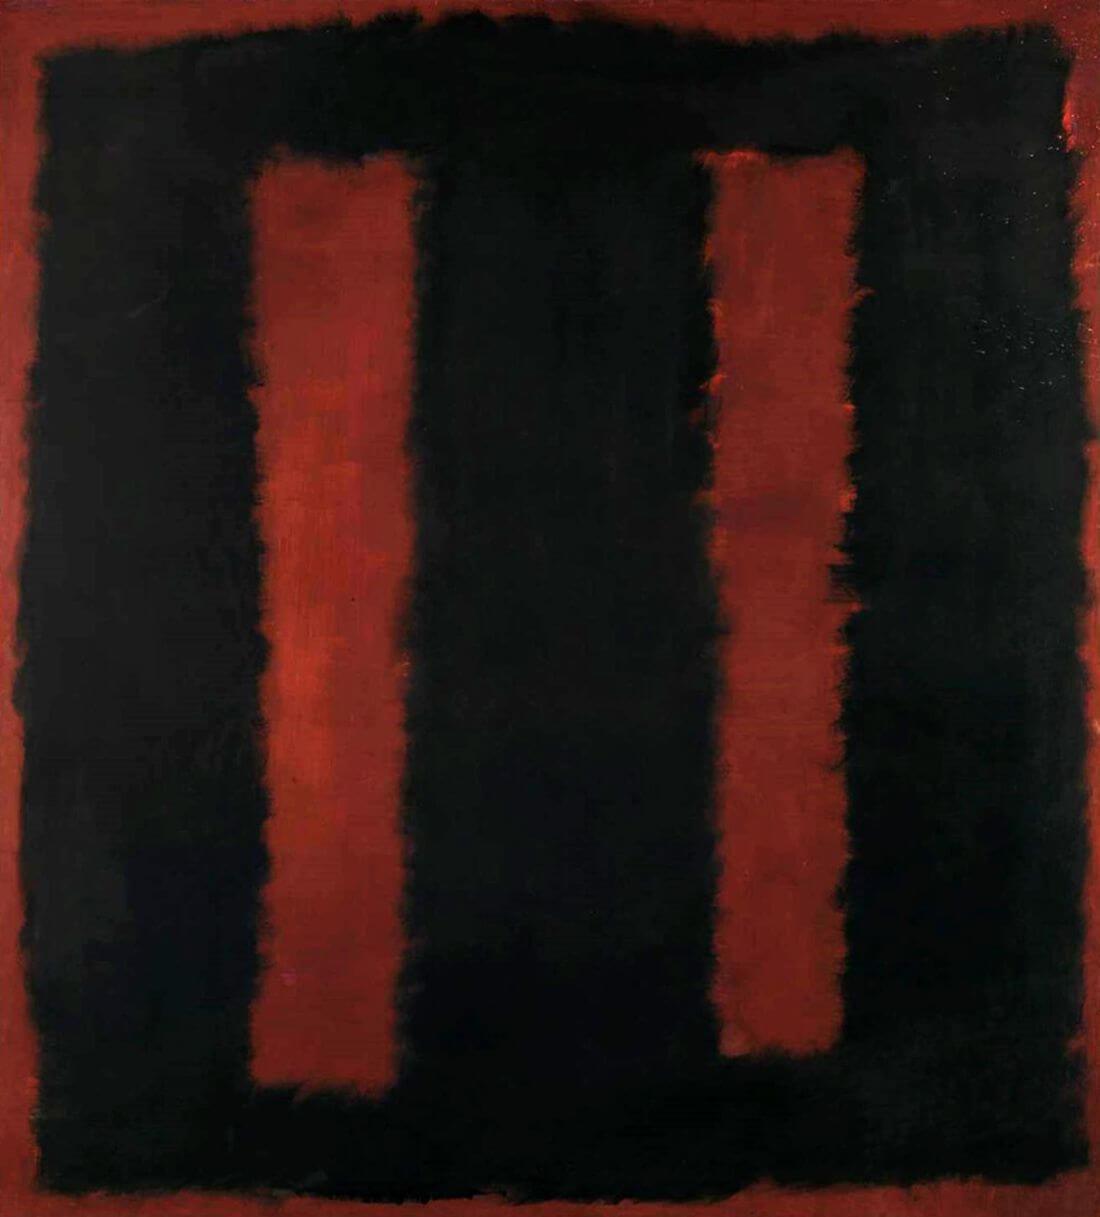 Black on Maroon 1958 - Mark Rothko - Color Field Painting - Art ...